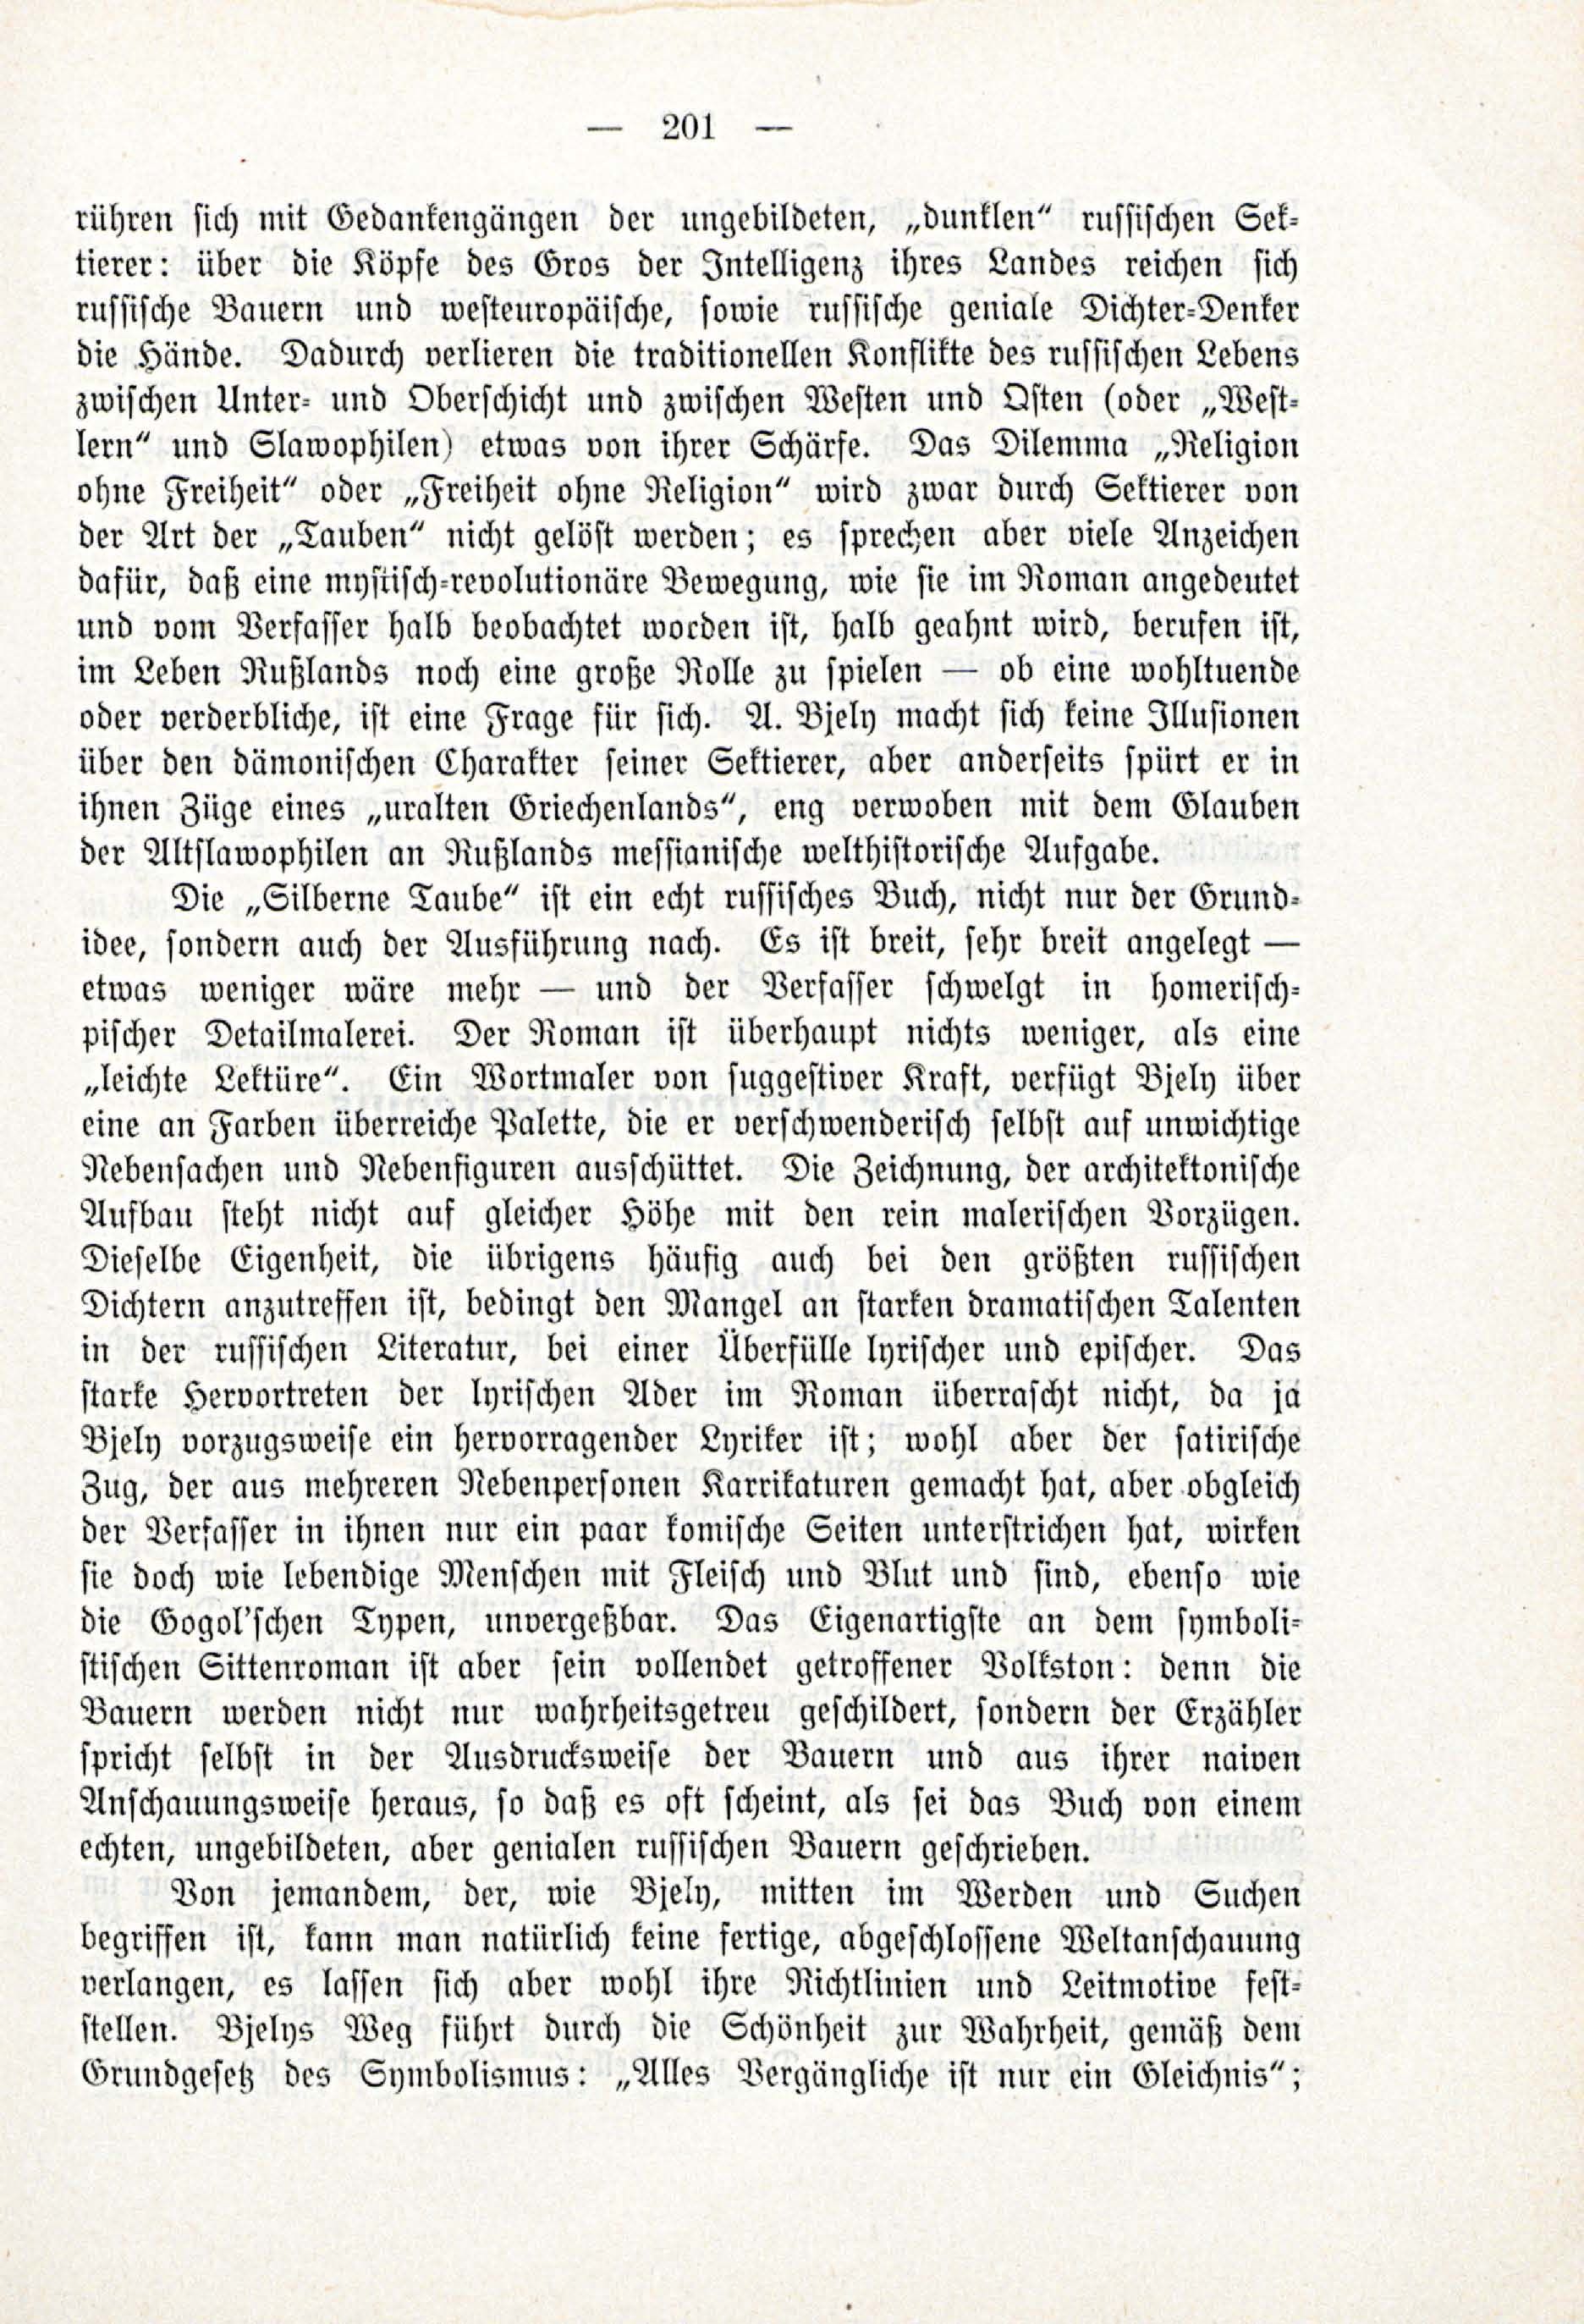 Deutsche Monatsschrift für Russland [3/03] (1914) | 47. (201) Main body of text